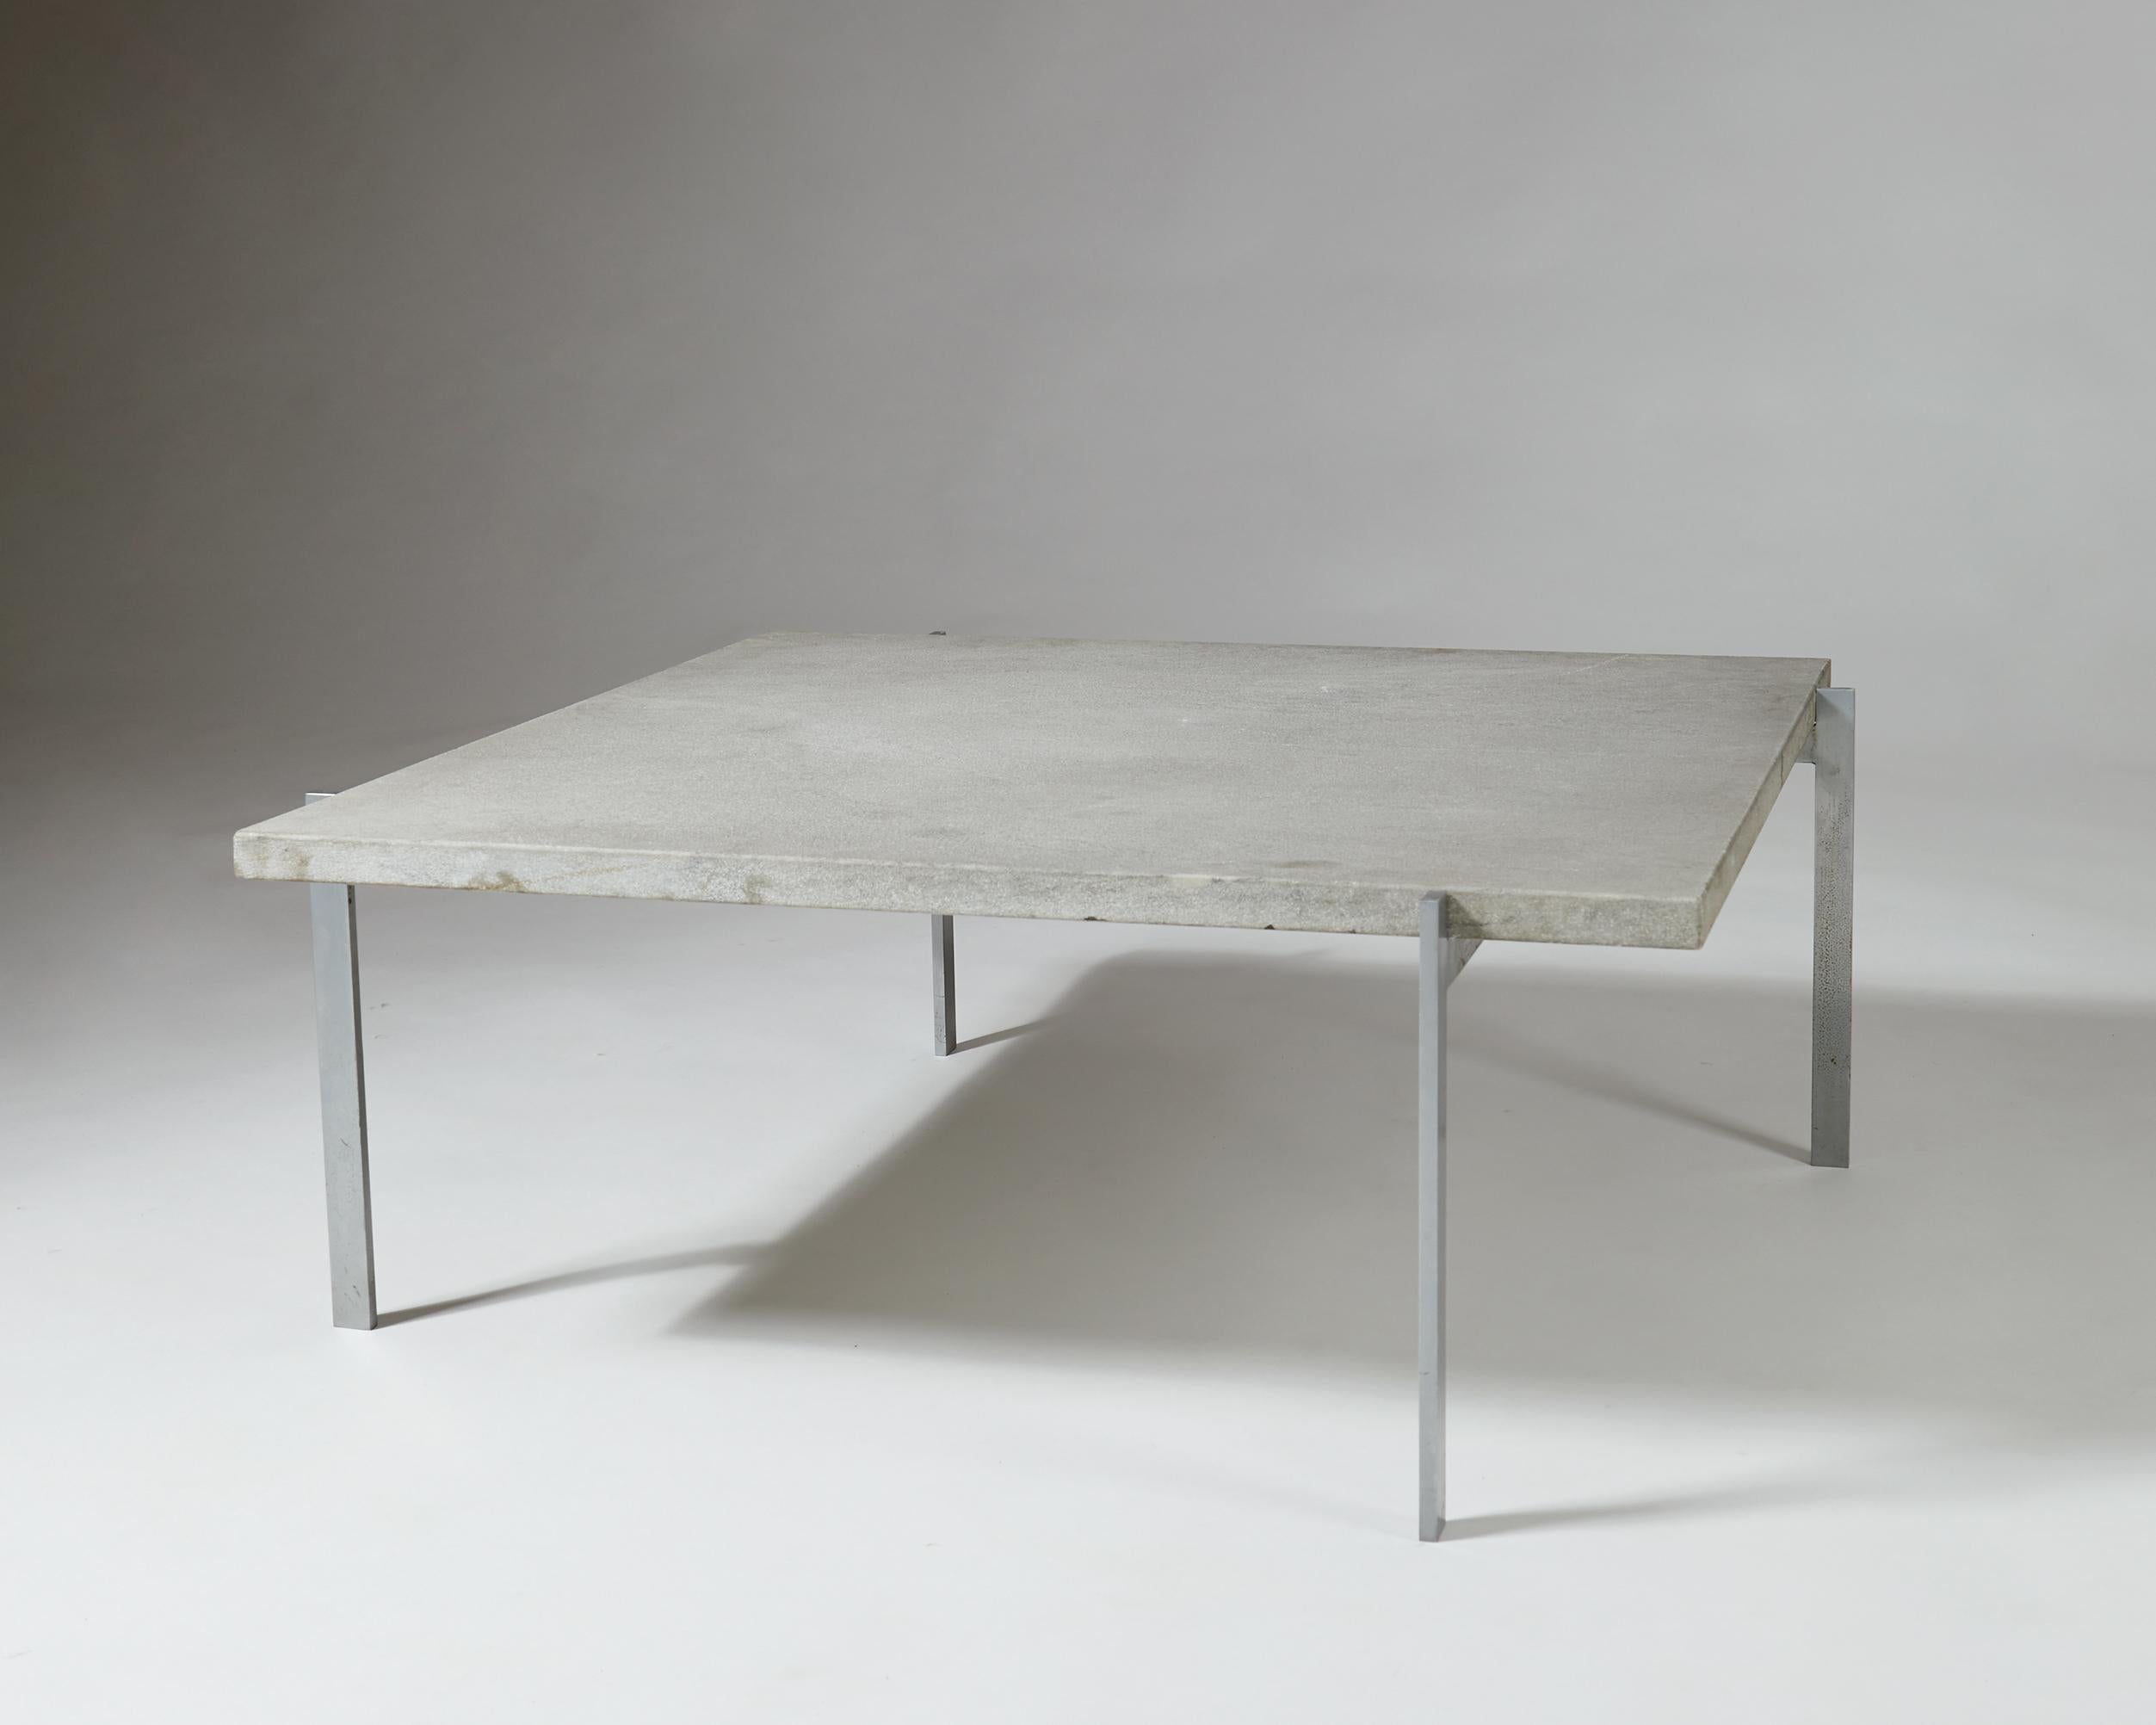 Table d'appoint PK61 conçue par Poul Kjaerholm pour E. Kold Christensen, 
Danemark, 1956.

Acier et marbre Cipollini roulé à la pierre à feu.